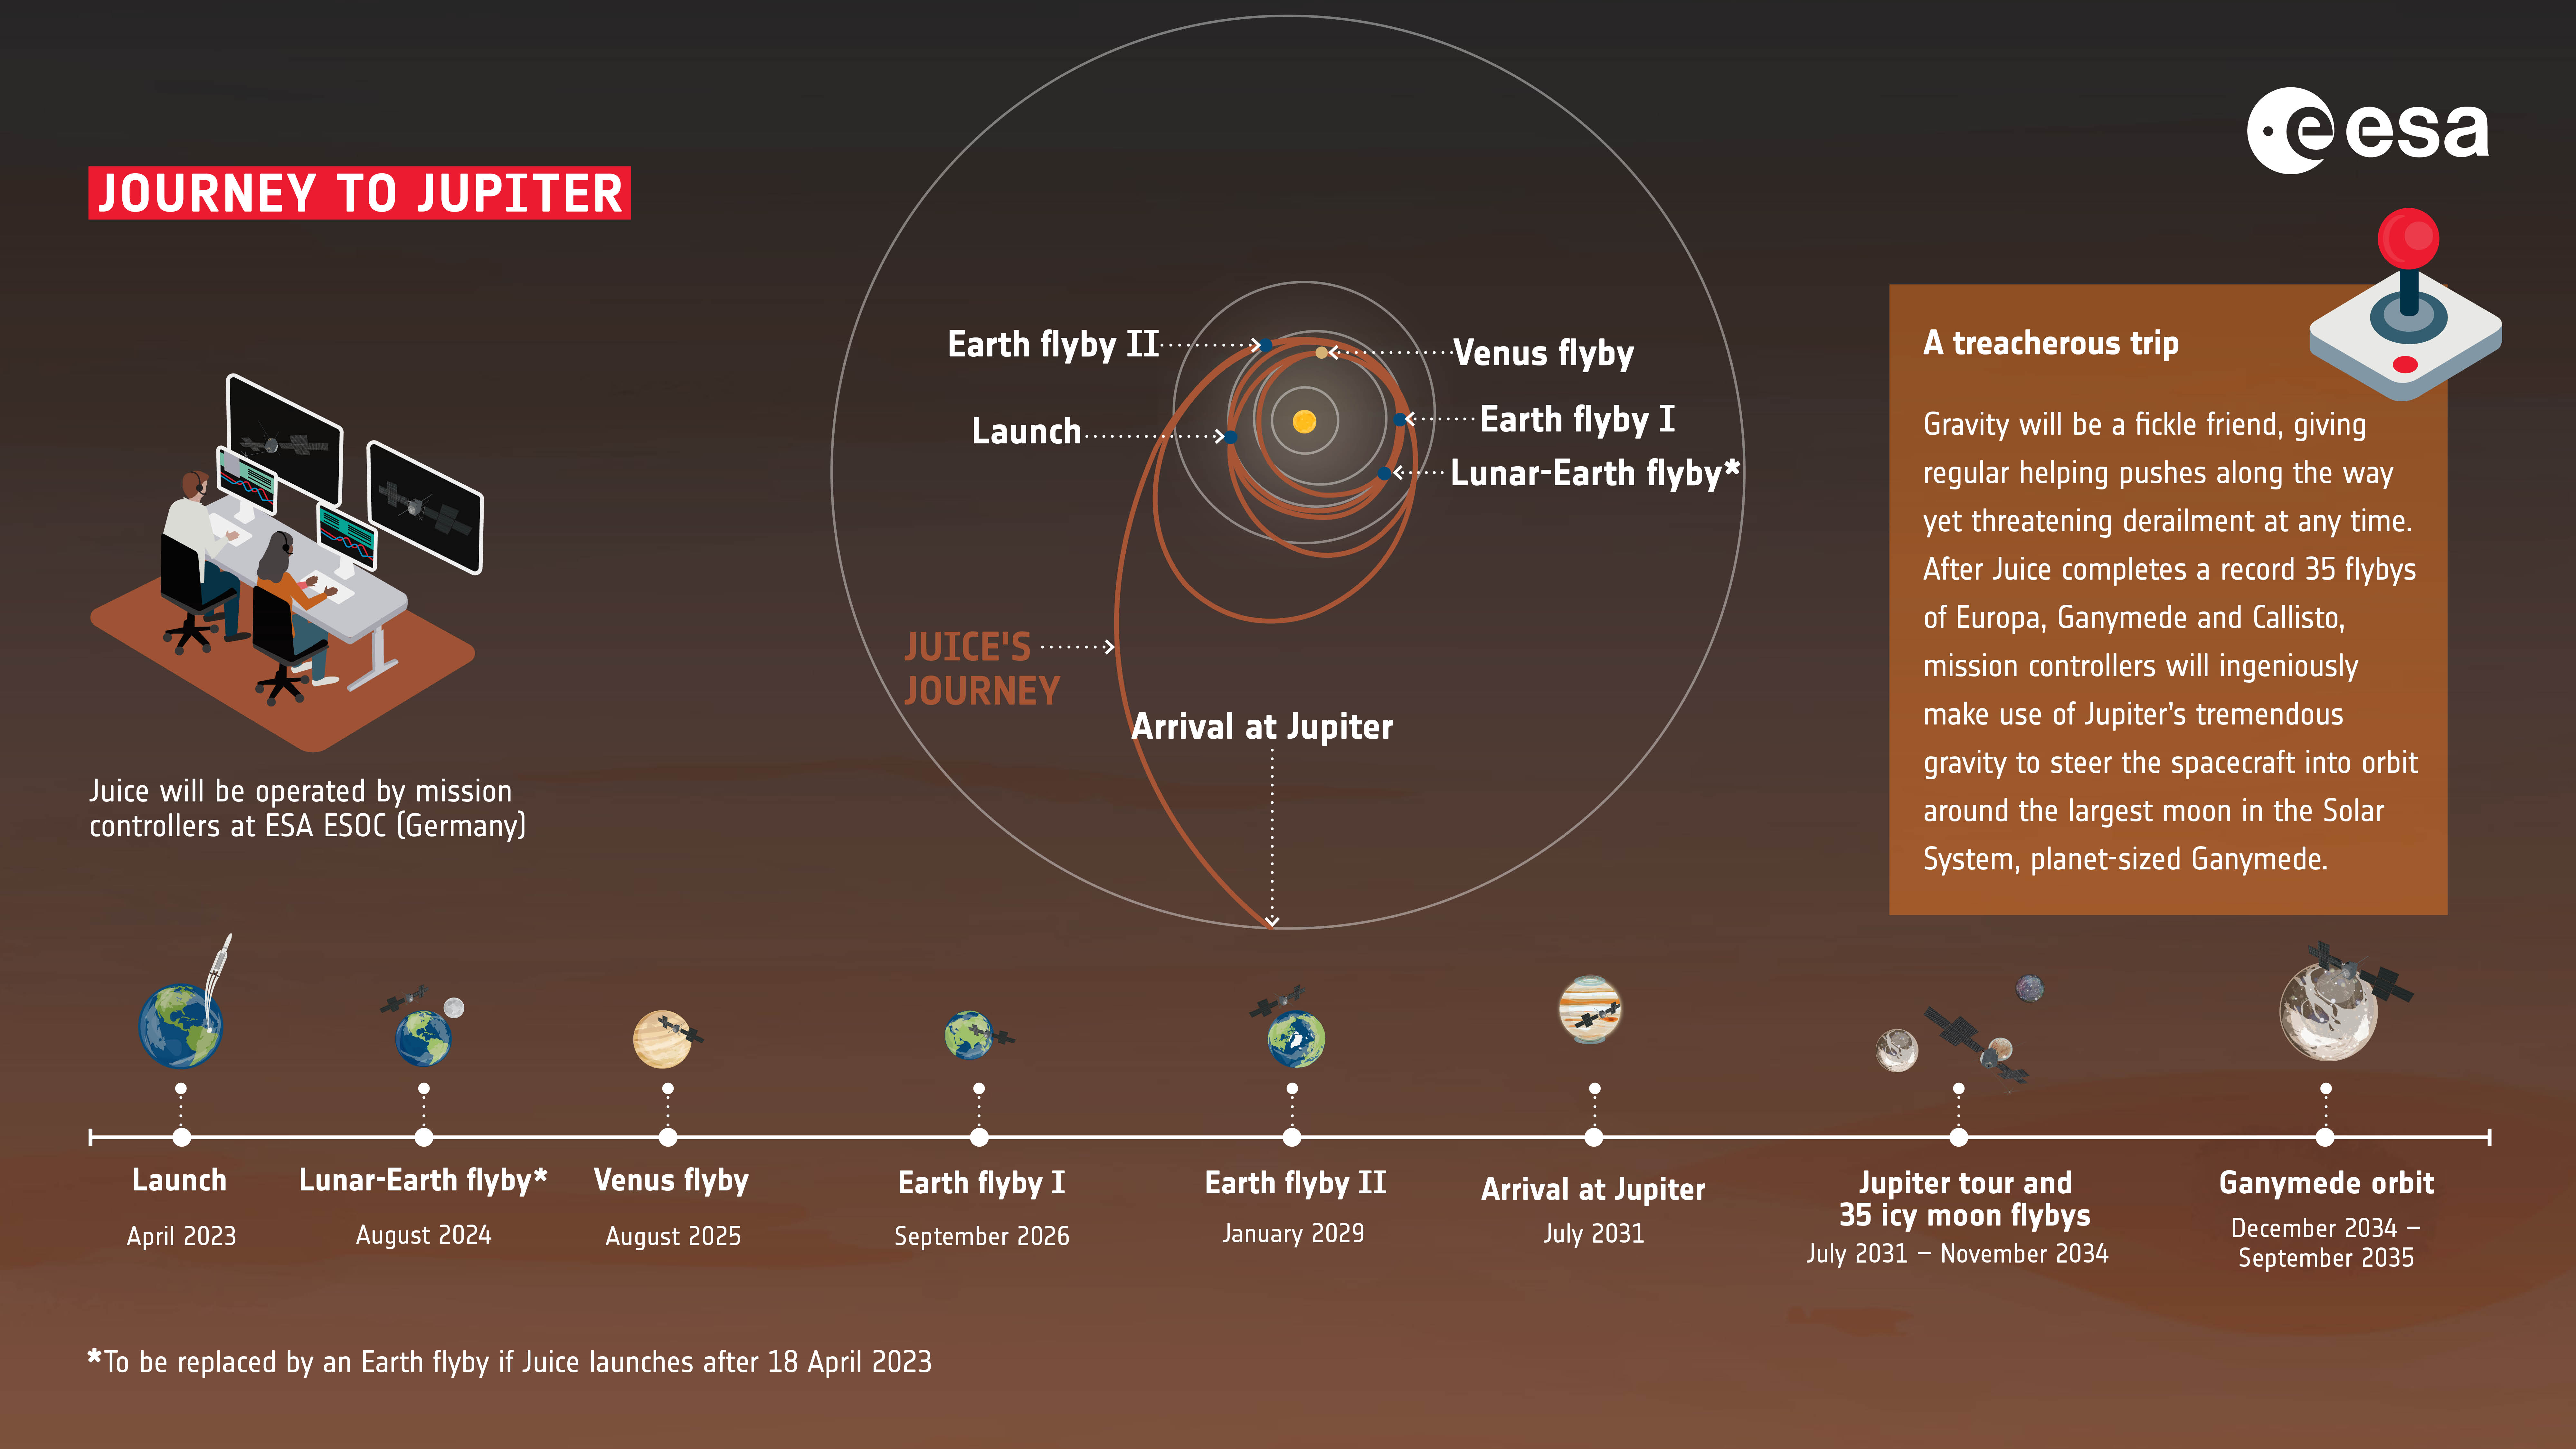 Una cronología de la misión JUICE, incluido su viaje a Júpiter.